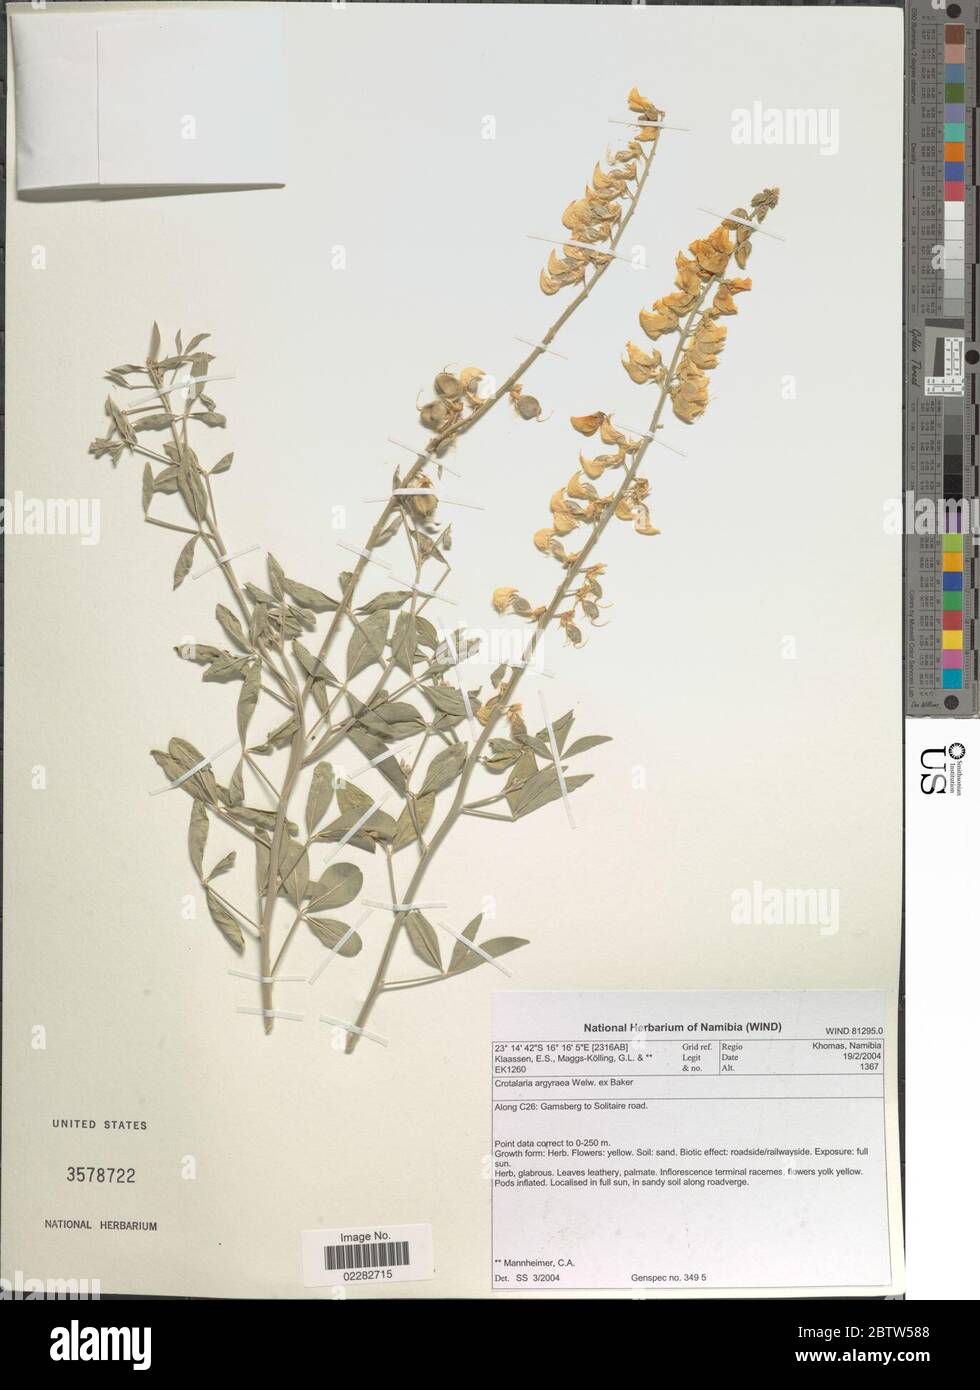 Crotalaria argyraea. Stock Photo